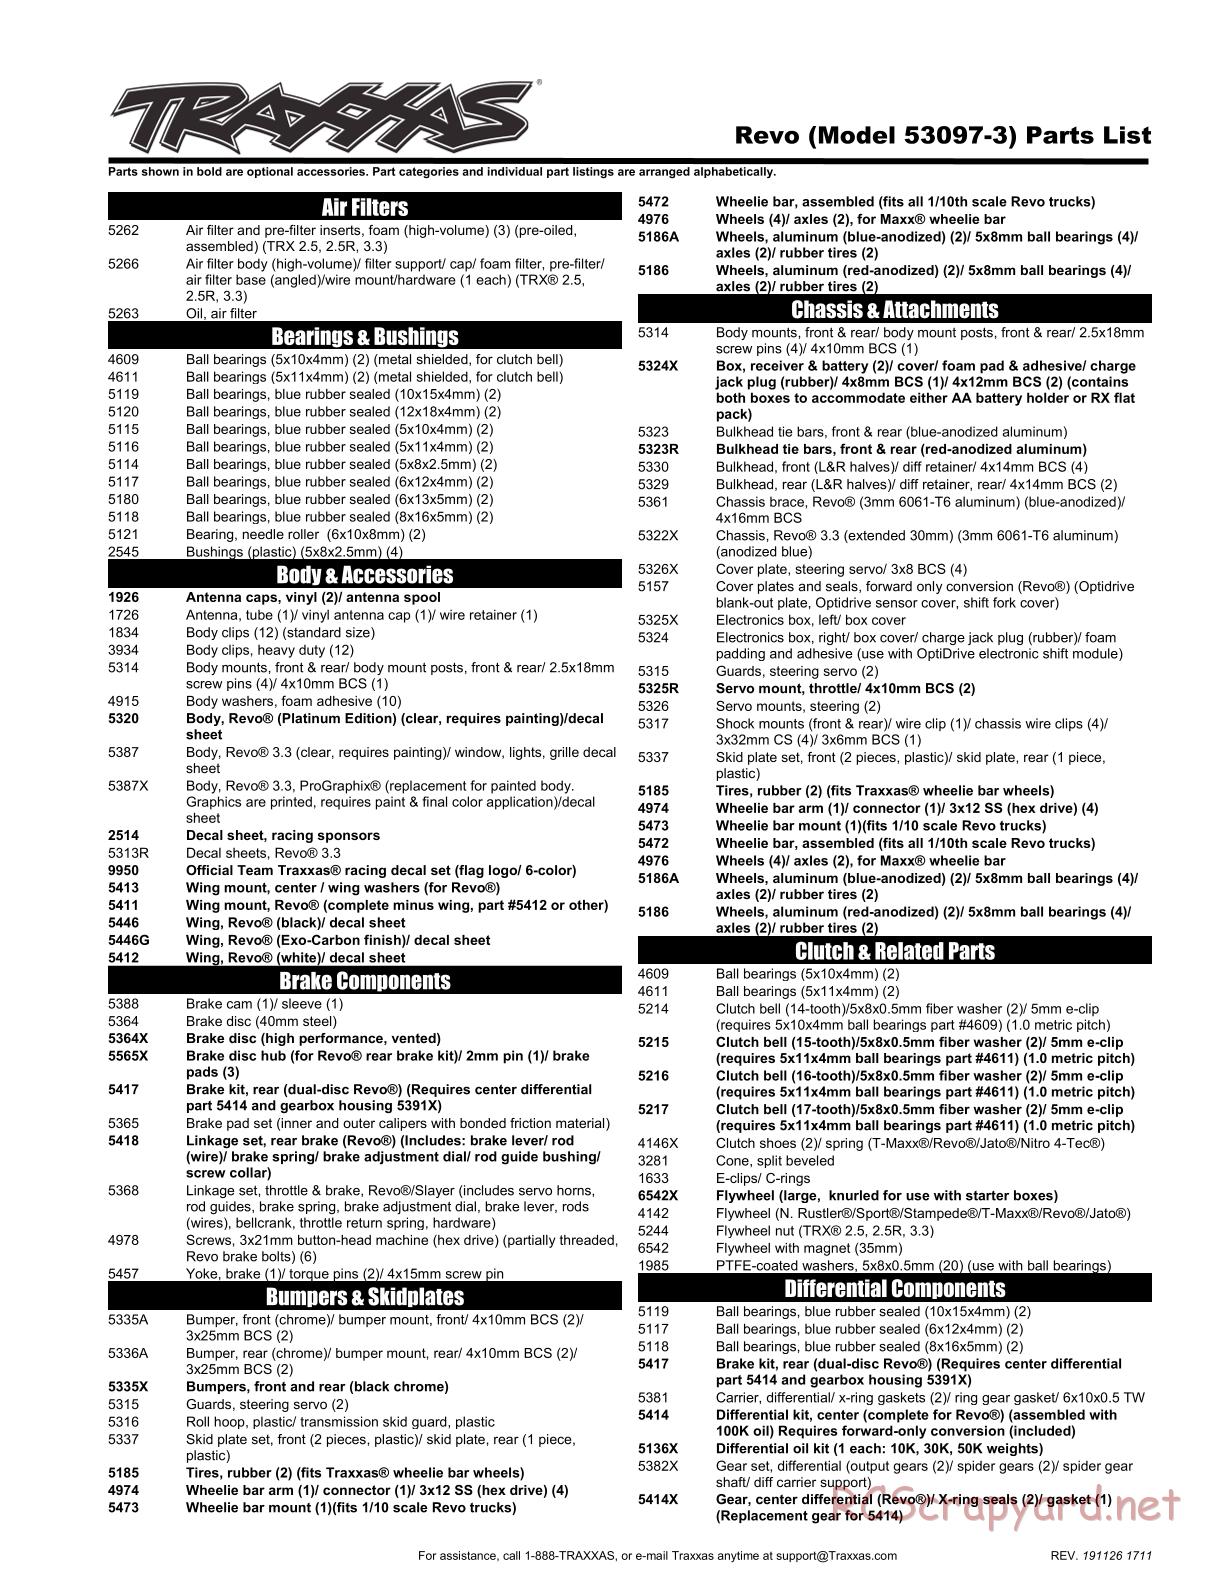 Traxxas - Revo 3.3 TSM - Parts List - Page 1